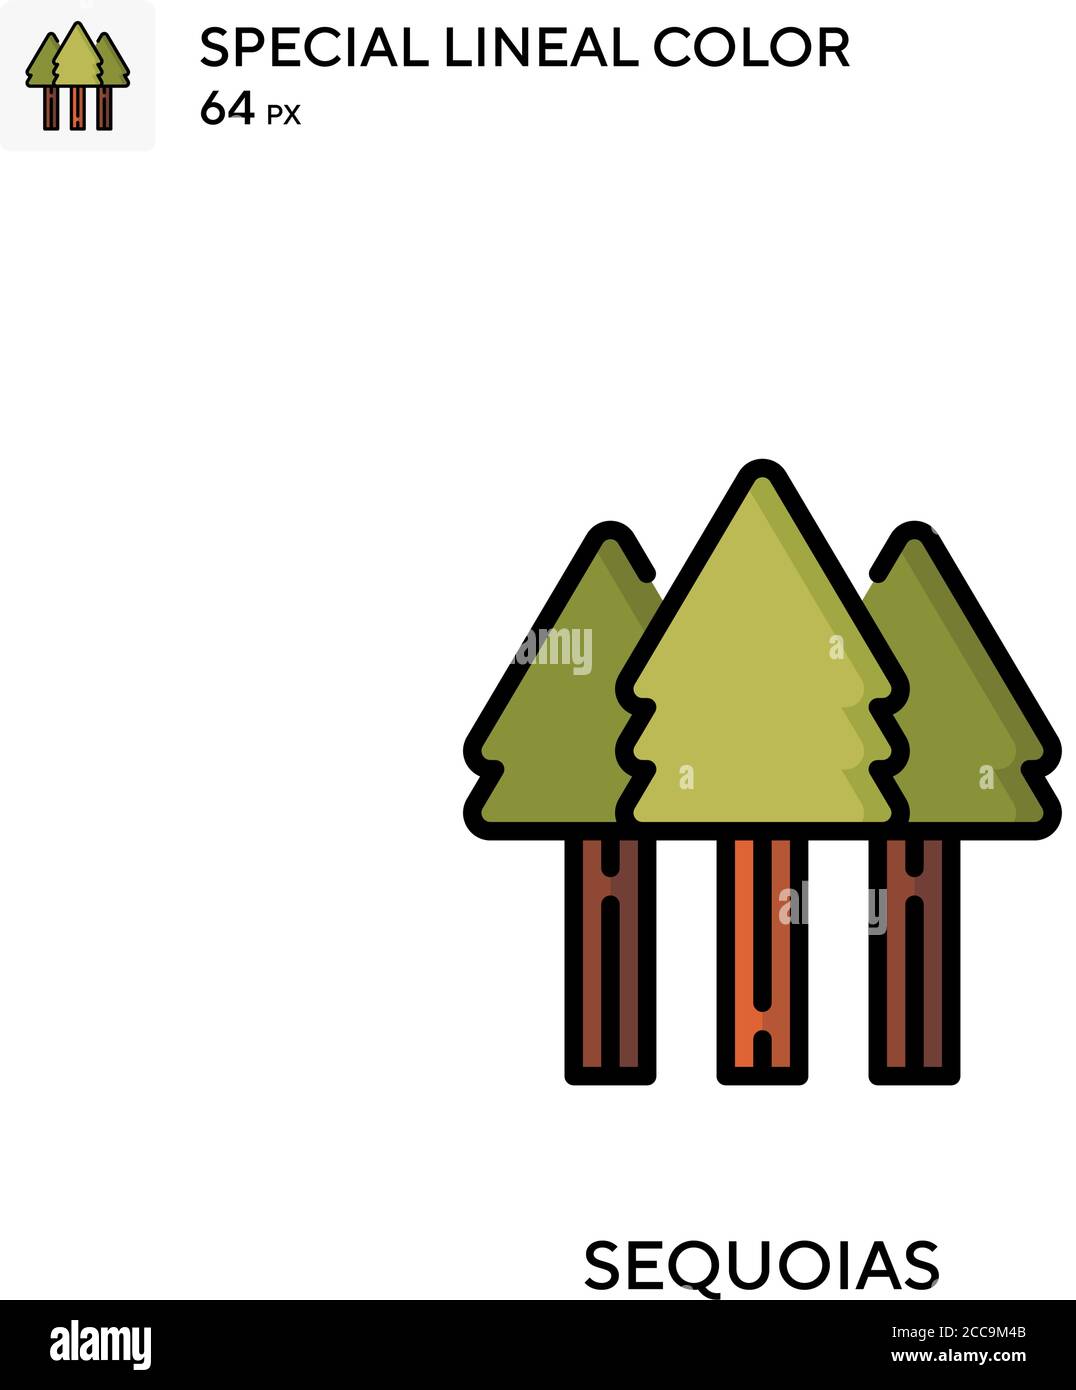 Sequoias icône de vecteur de couleur spécial linéaire. Modèle de conception de symbole d'illustration pour élément d'interface utilisateur Web mobile. Illustration de Vecteur